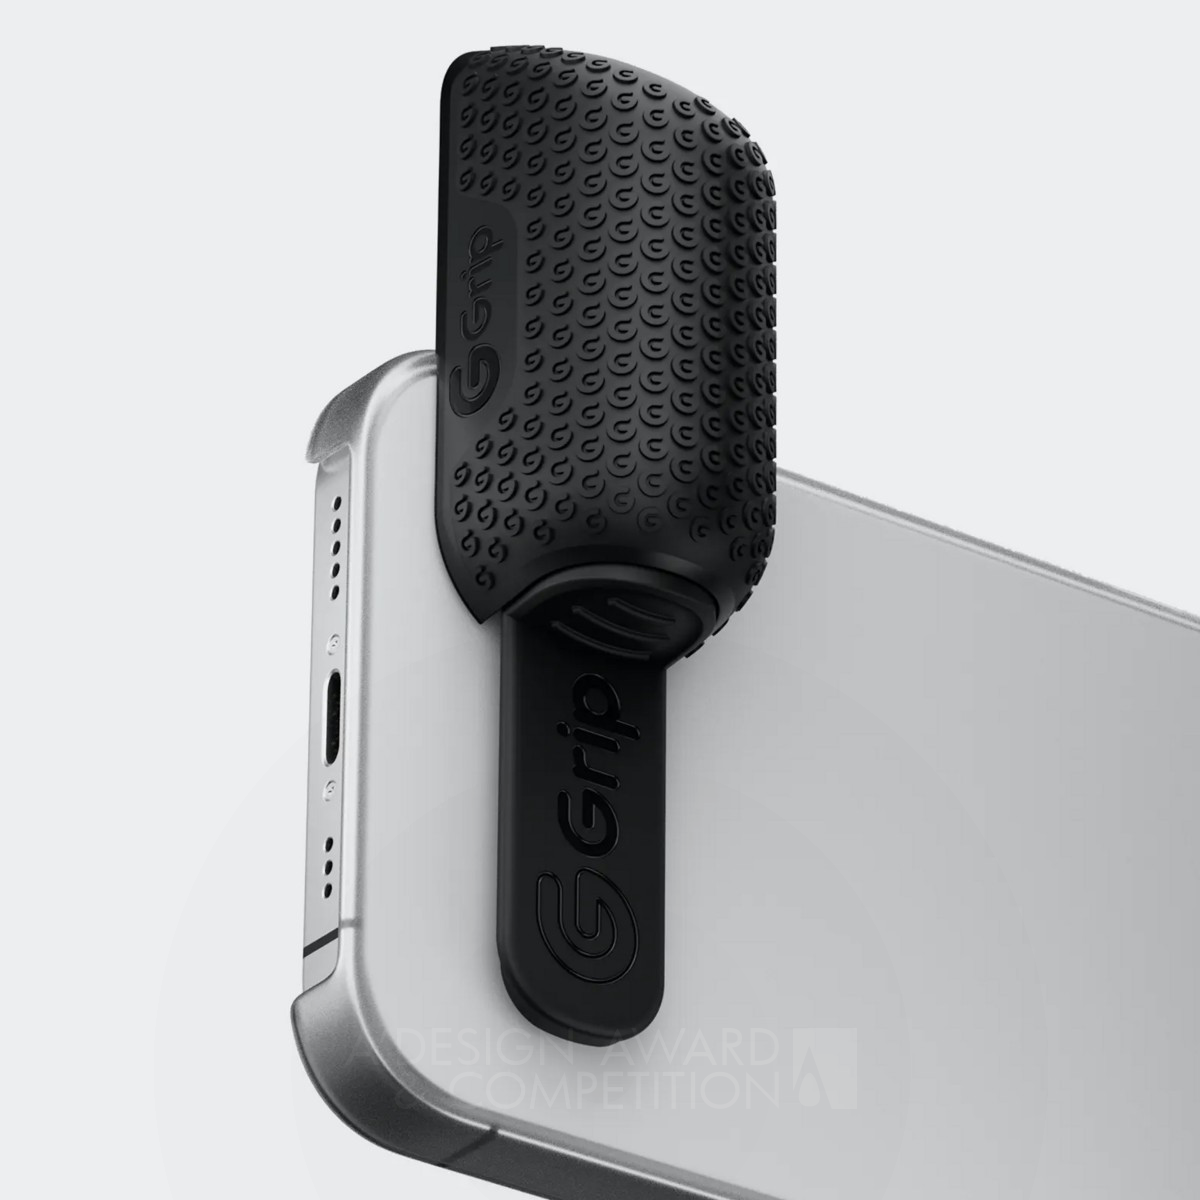 G-Grip : Une poignée ergonomique pour votre téléphone